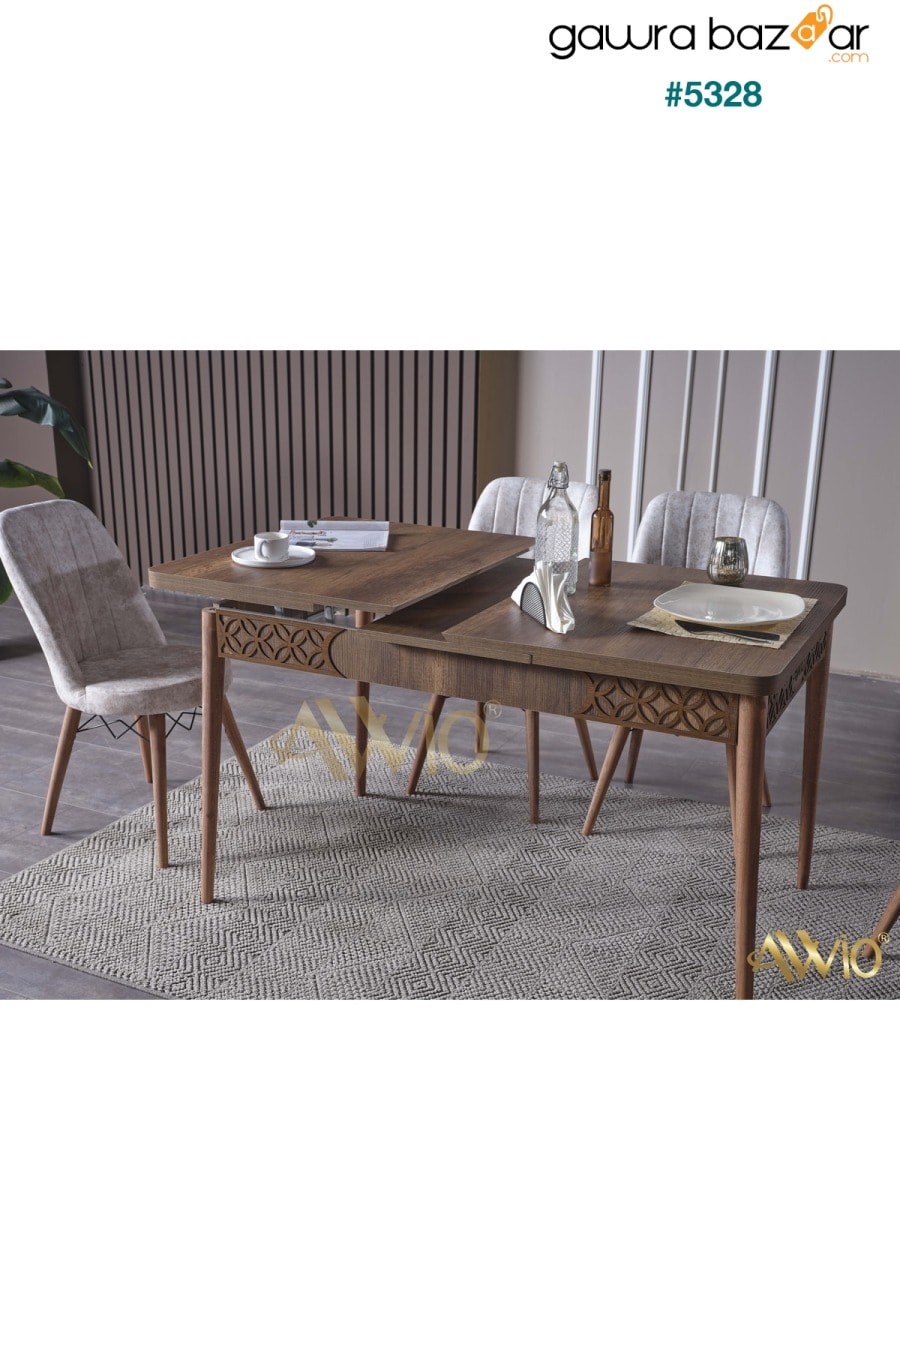 طاولة مطبخ من خشب الجوز قابلة للتمديد من سوميلا ، طاولة طعام قابلة للتمديد Avvio 0